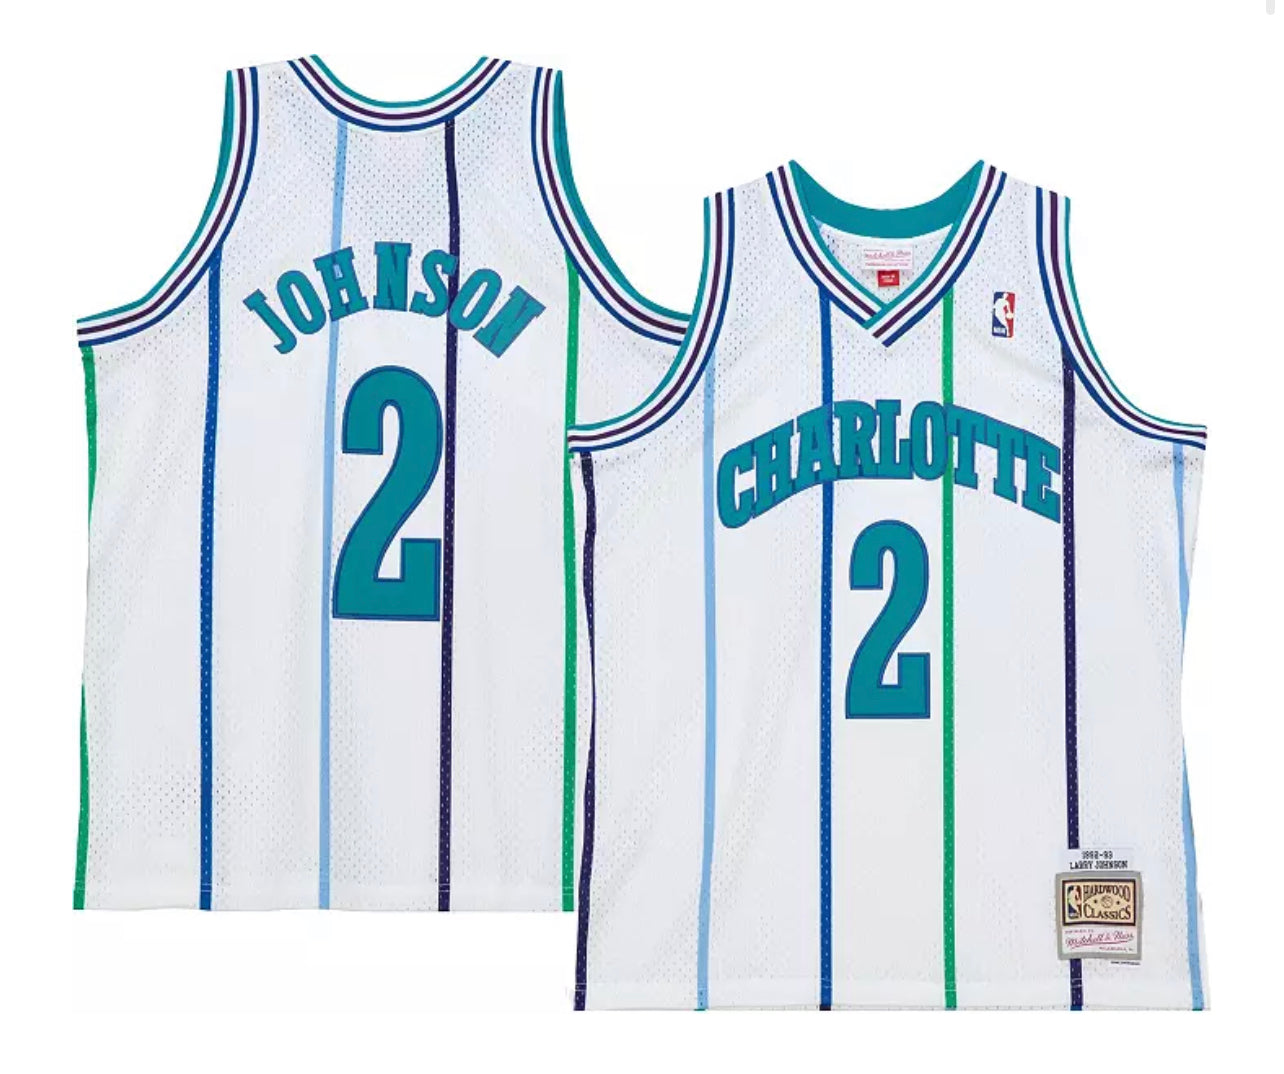 Charlotte Hornets 92-93 Swingman Jersey, NBA